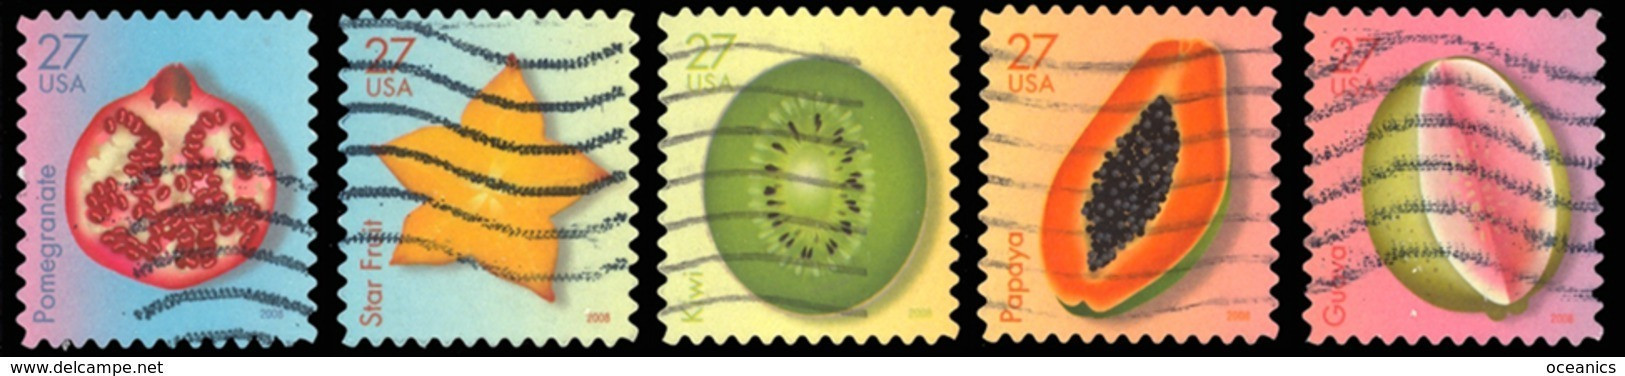 Etats-Unis / United States (Scott No.4253-57 - Fruits Tropicaux / Tropical Fruits) (o) - Usados